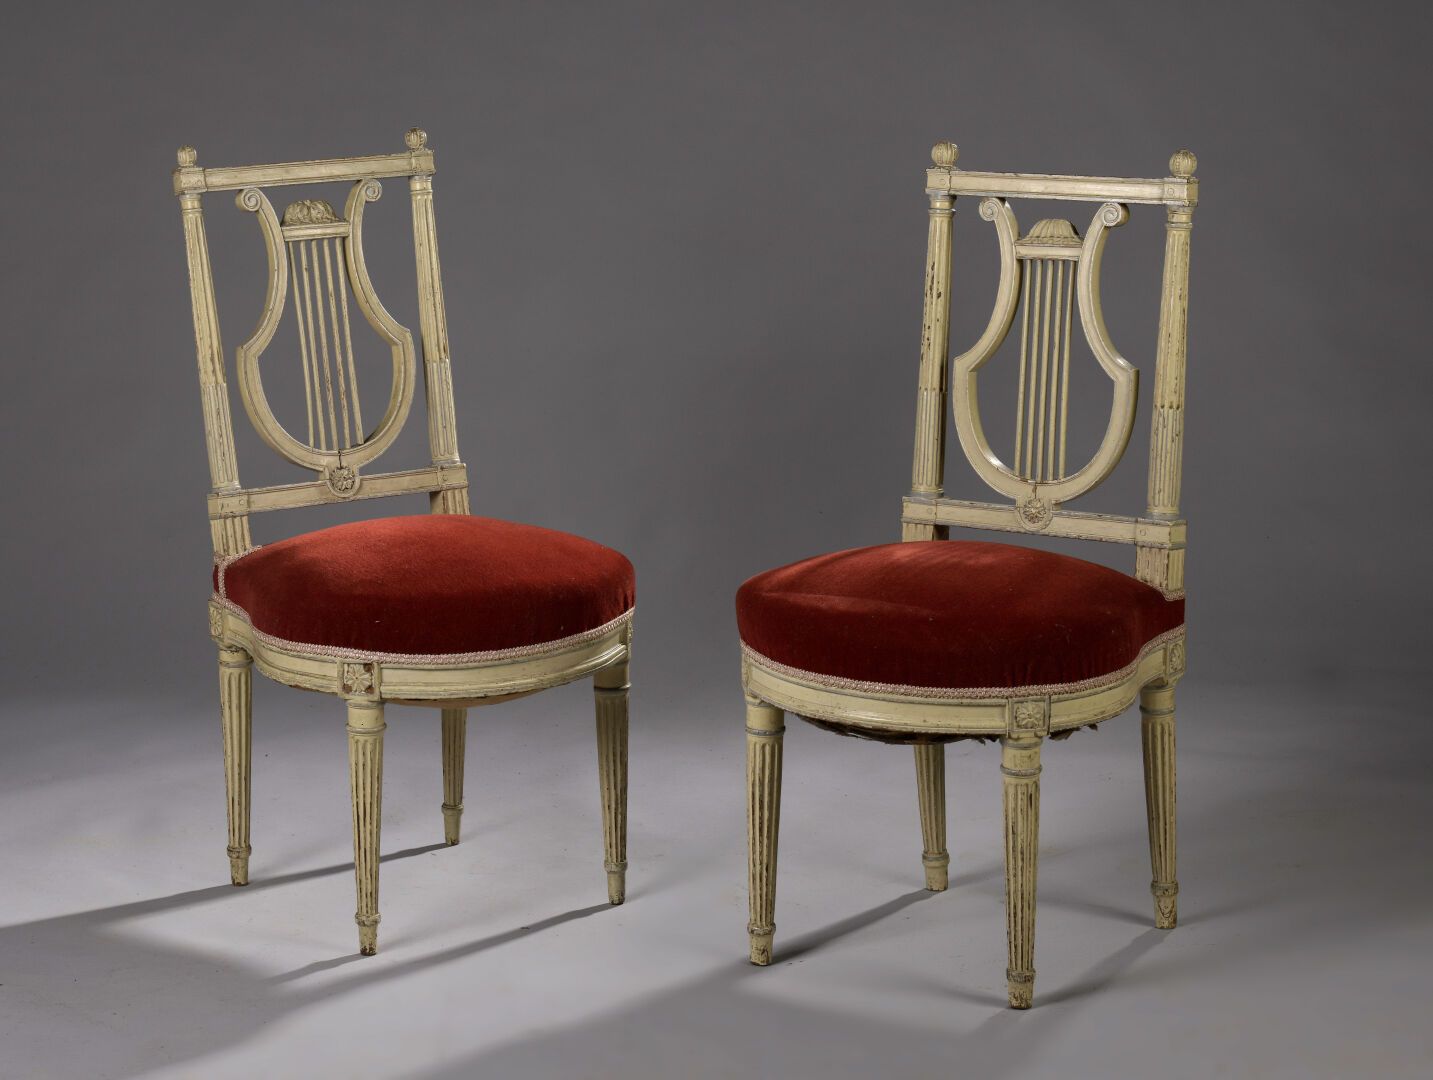 Paire de chaise d'époque Louis XVI 一对路易十六时期的模制和雕刻的木椅。它们有一个荔枝形的背，站在有凹槽的锥形腿上。

89 &hellip;